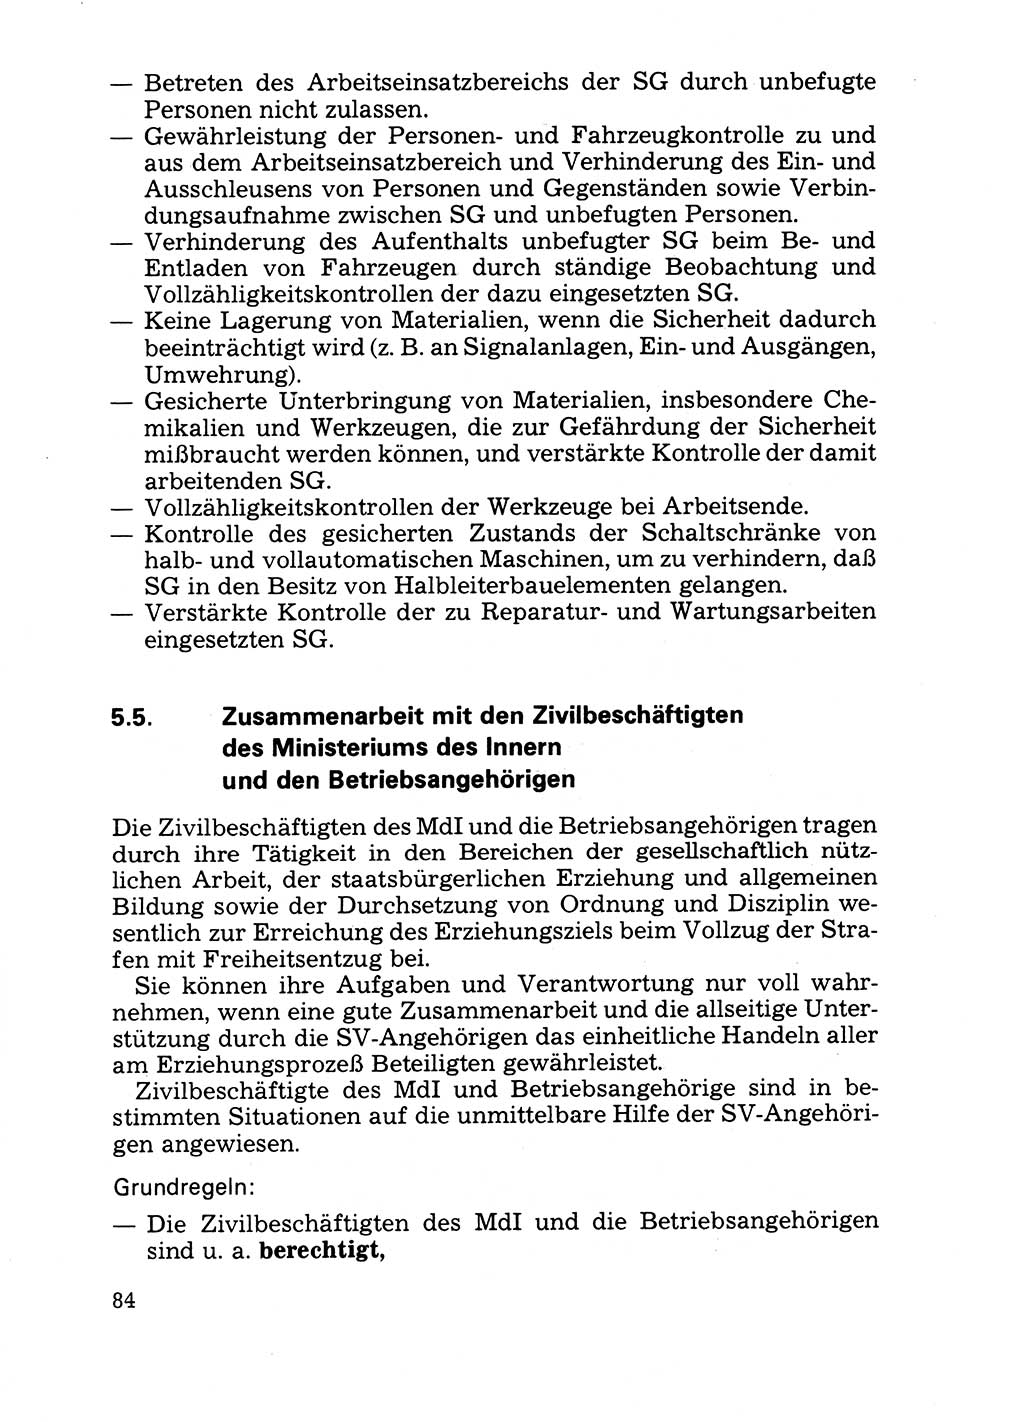 Handbuch für operative Dienste, Abteilung Strafvollzug (SV) [Ministerium des Innern (MdI) Deutsche Demokratische Republik (DDR)] 1981, Seite 84 (Hb. op. D. Abt. SV MdI DDR 1981, S. 84)